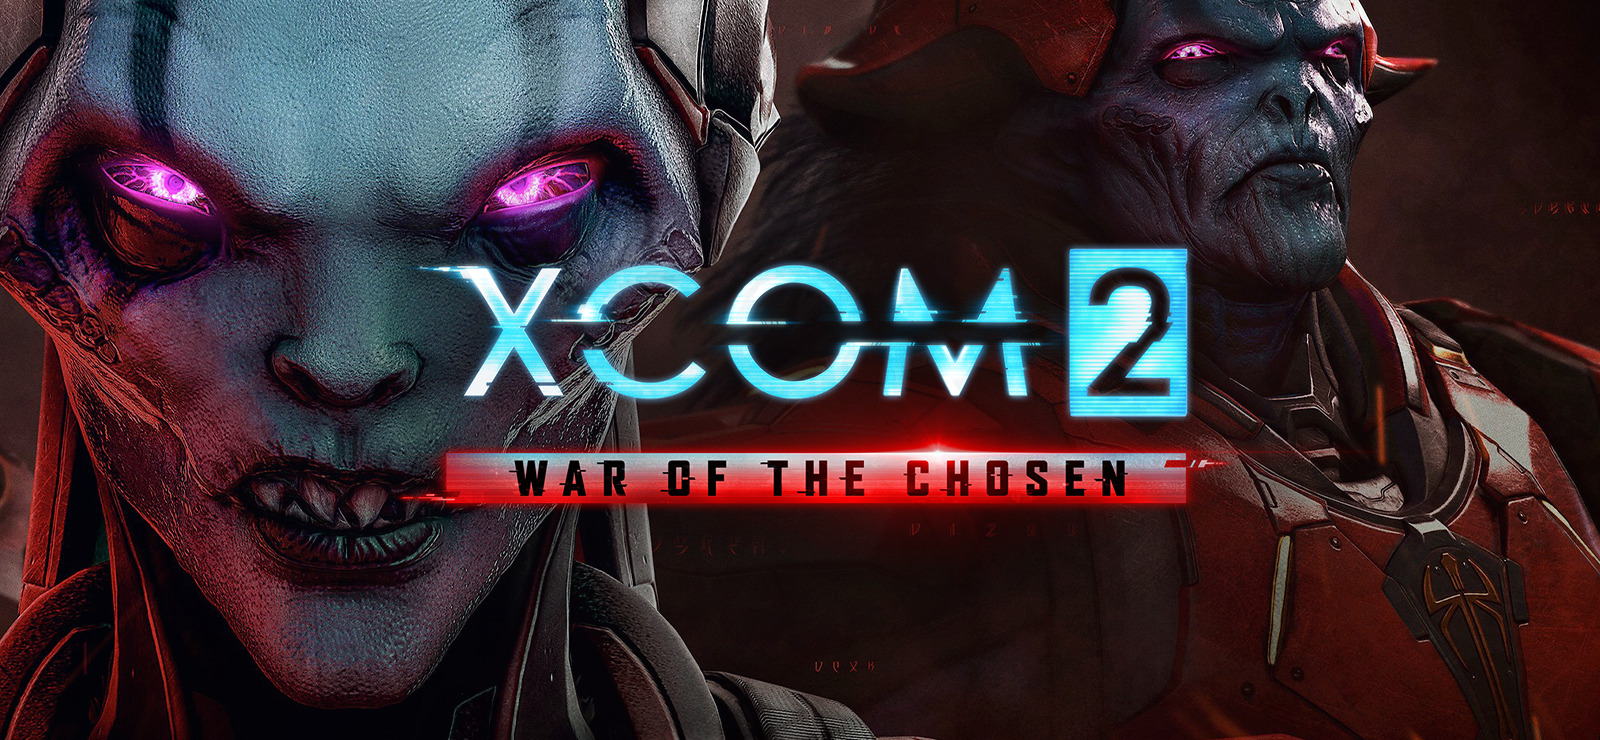 XCOM 2: War of the Chosen on GOG.com